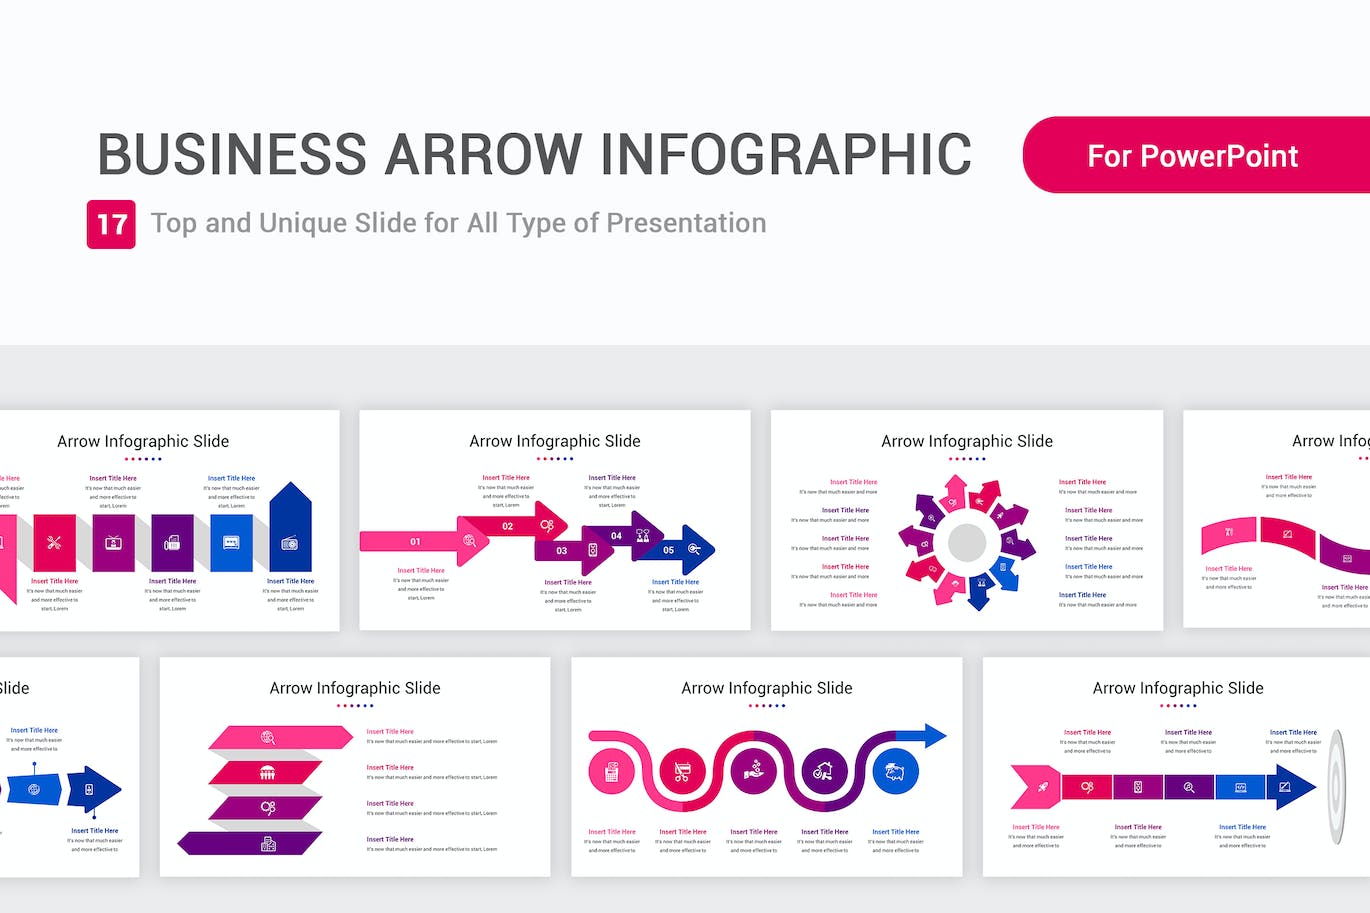 业务箭头信息图表PPT幻灯片模板素材 Business Arrow Infographic PowerPoint Template 幻灯图表 第1张